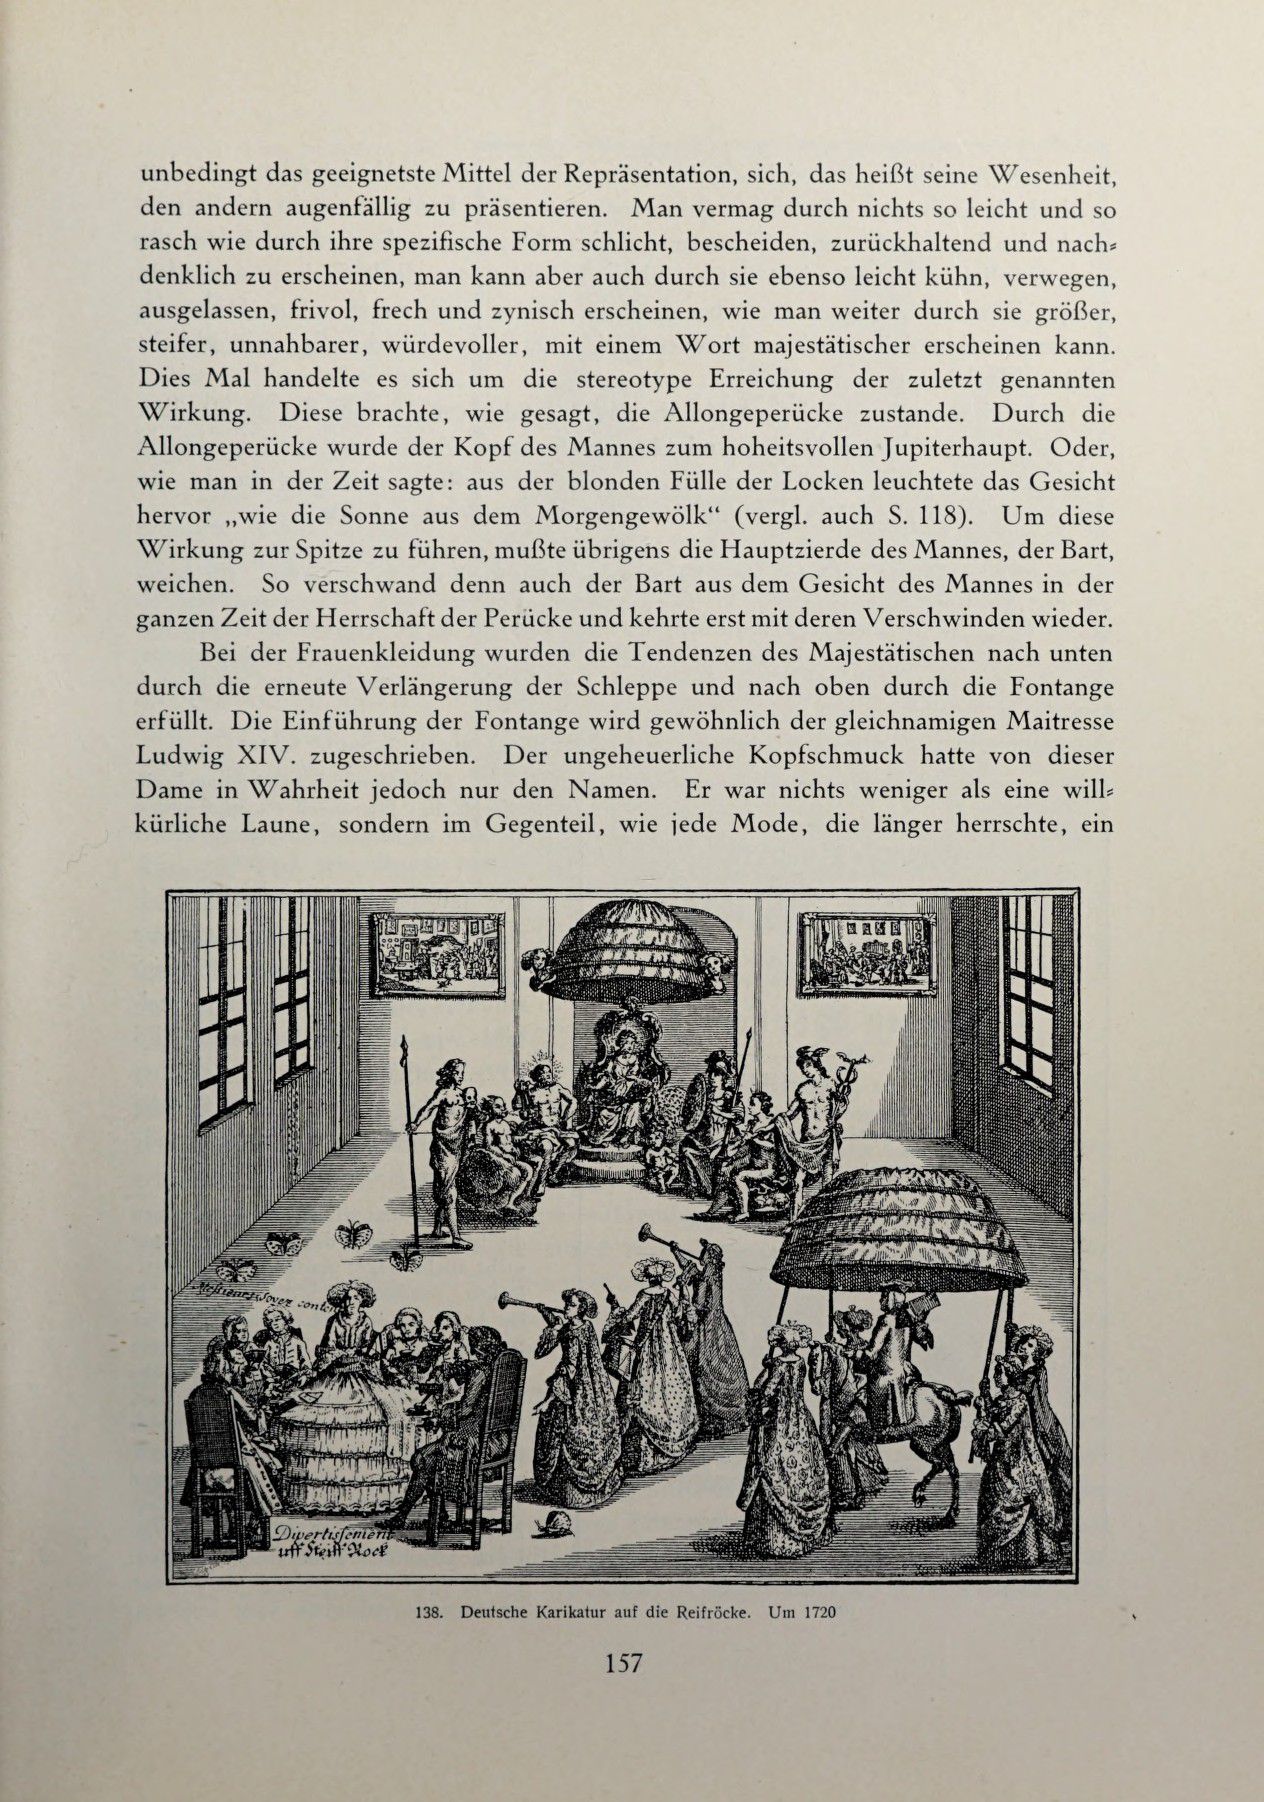 [Eduard Fuchs] Illustrierte Sittengeschichte vom Mittelalter bis zur Gegenwart: Bd. 2. and Ergänzungsband. Die galante Zeit [German] 238